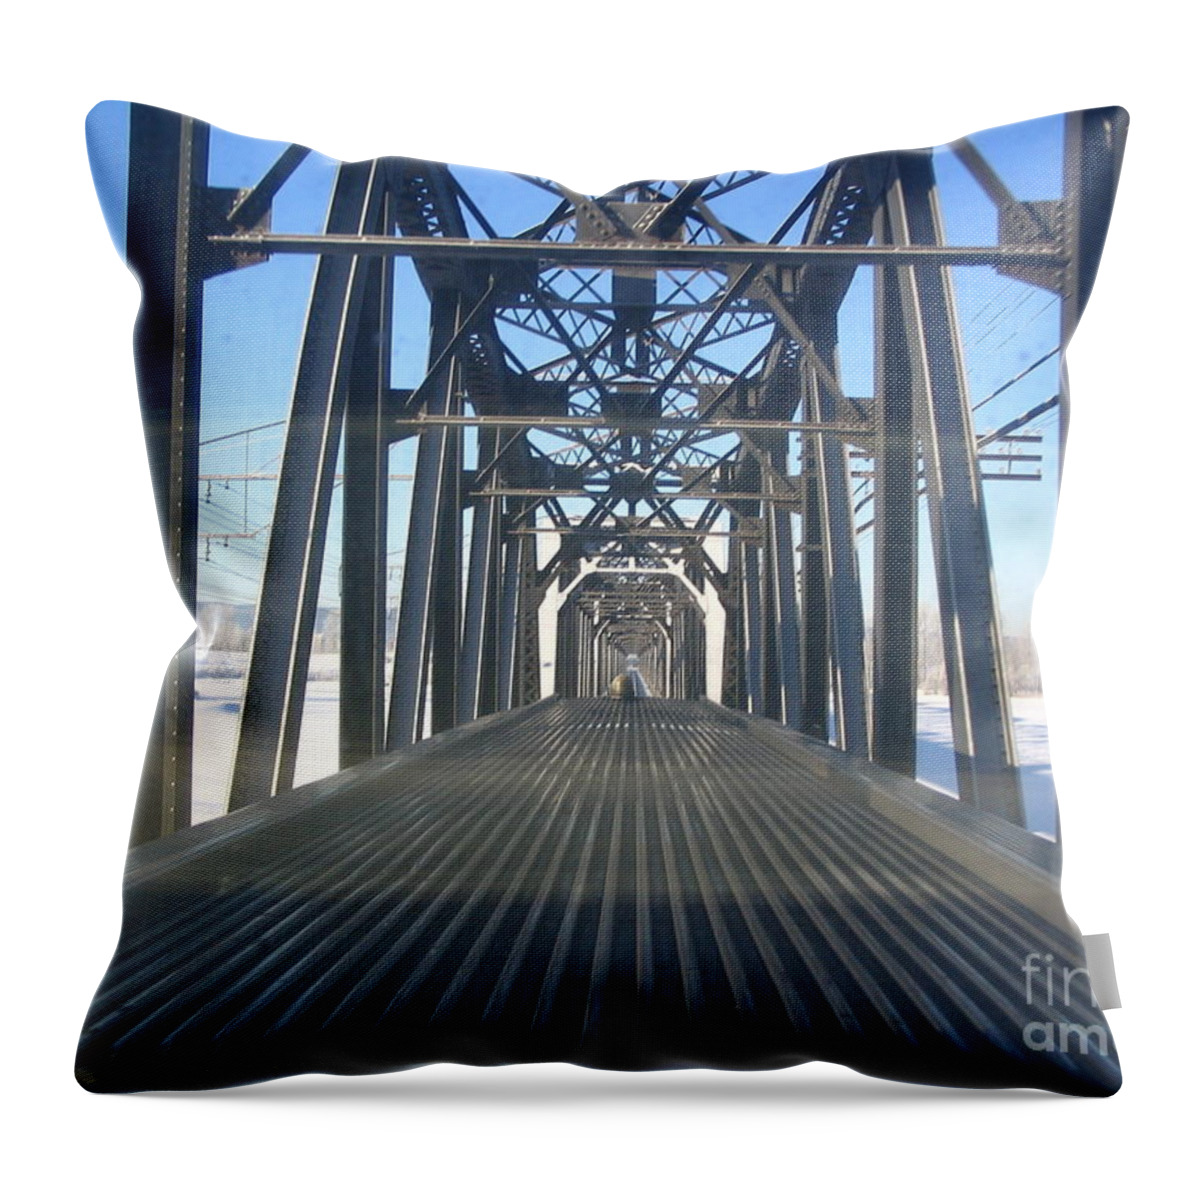 Train Throw Pillow featuring the photograph Train Bridge by Vivian Martin